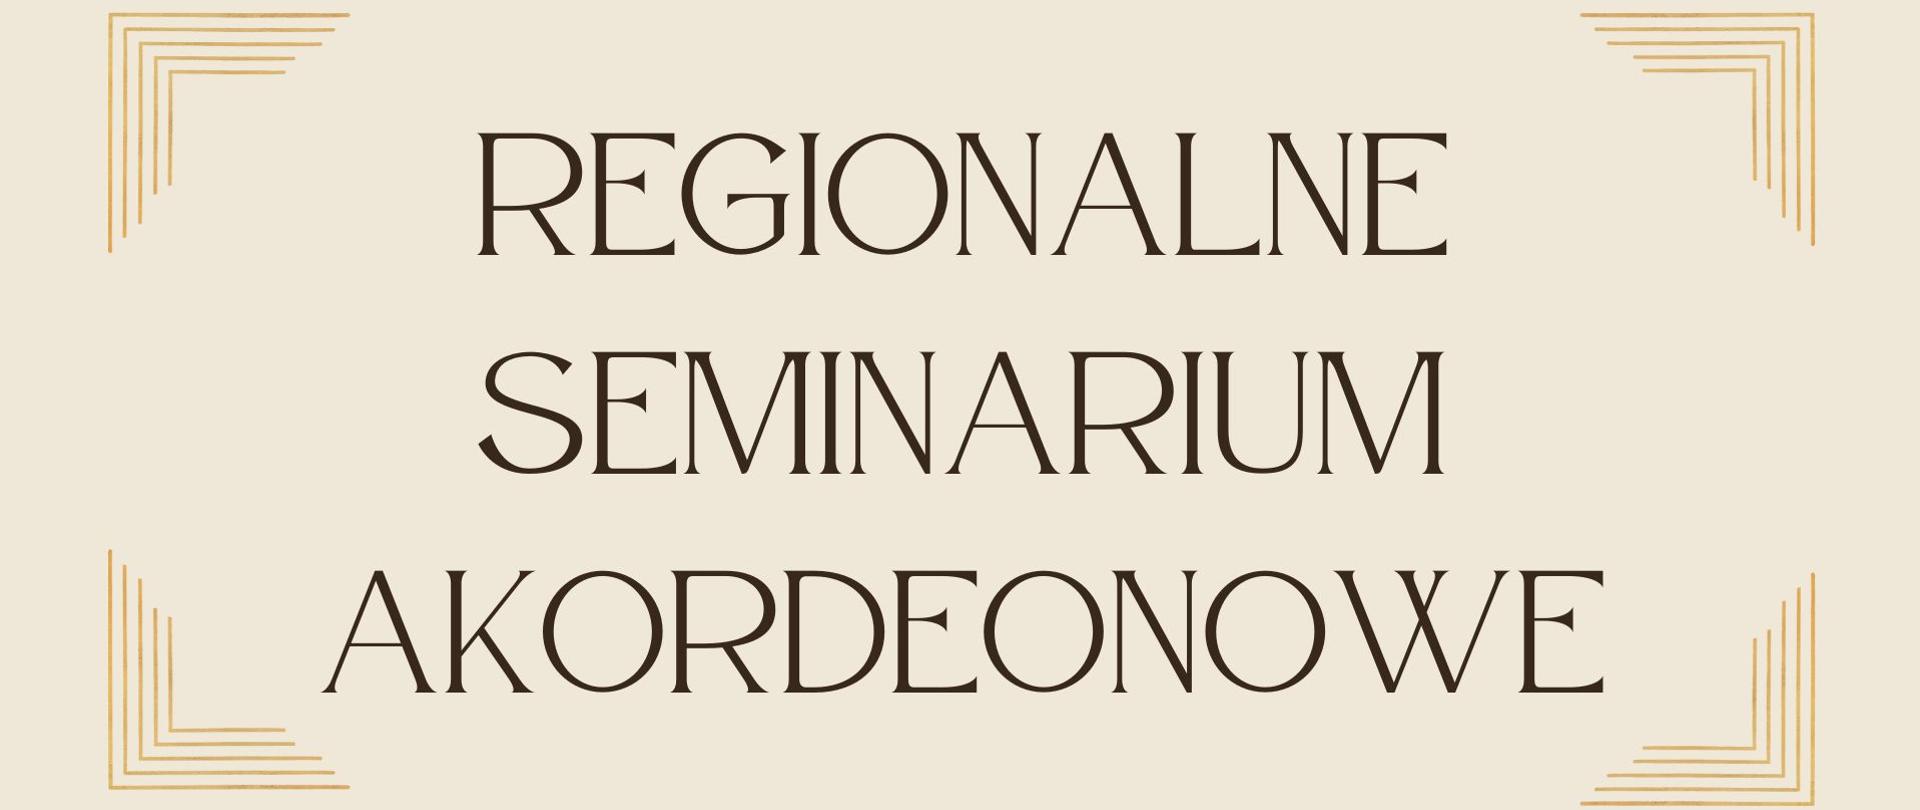 Plakat regionalnego seminarium akordeonowego. Każdy róg posiada ozdobne wykończenia.